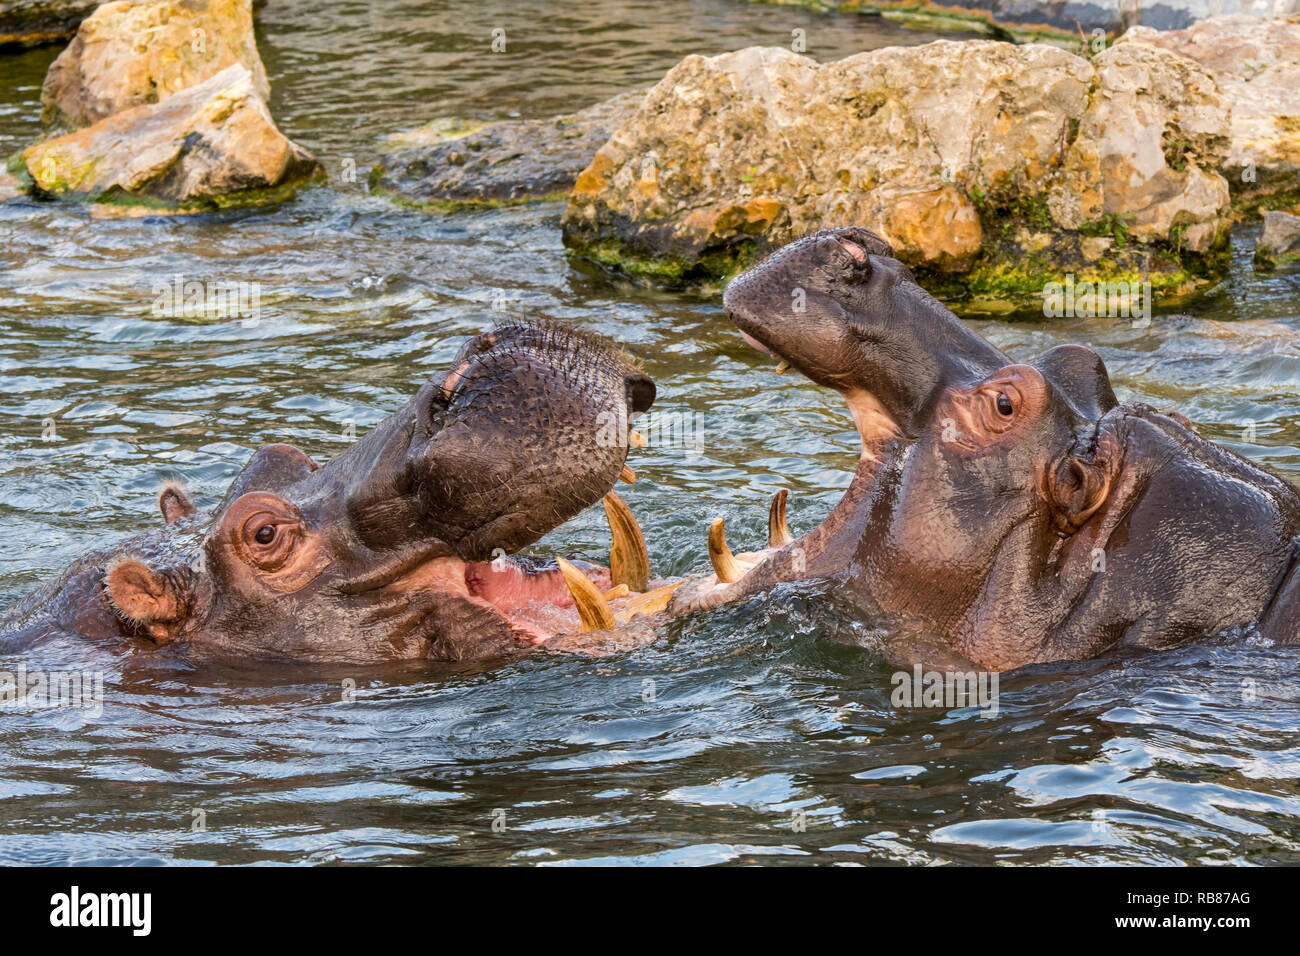 Los combates / hipopótamos los hipopótamos (Hippopotamus amphibius) en el lago mostrando dientes enormes y grandes colmillos caninos en boca hambriente Foto de stock